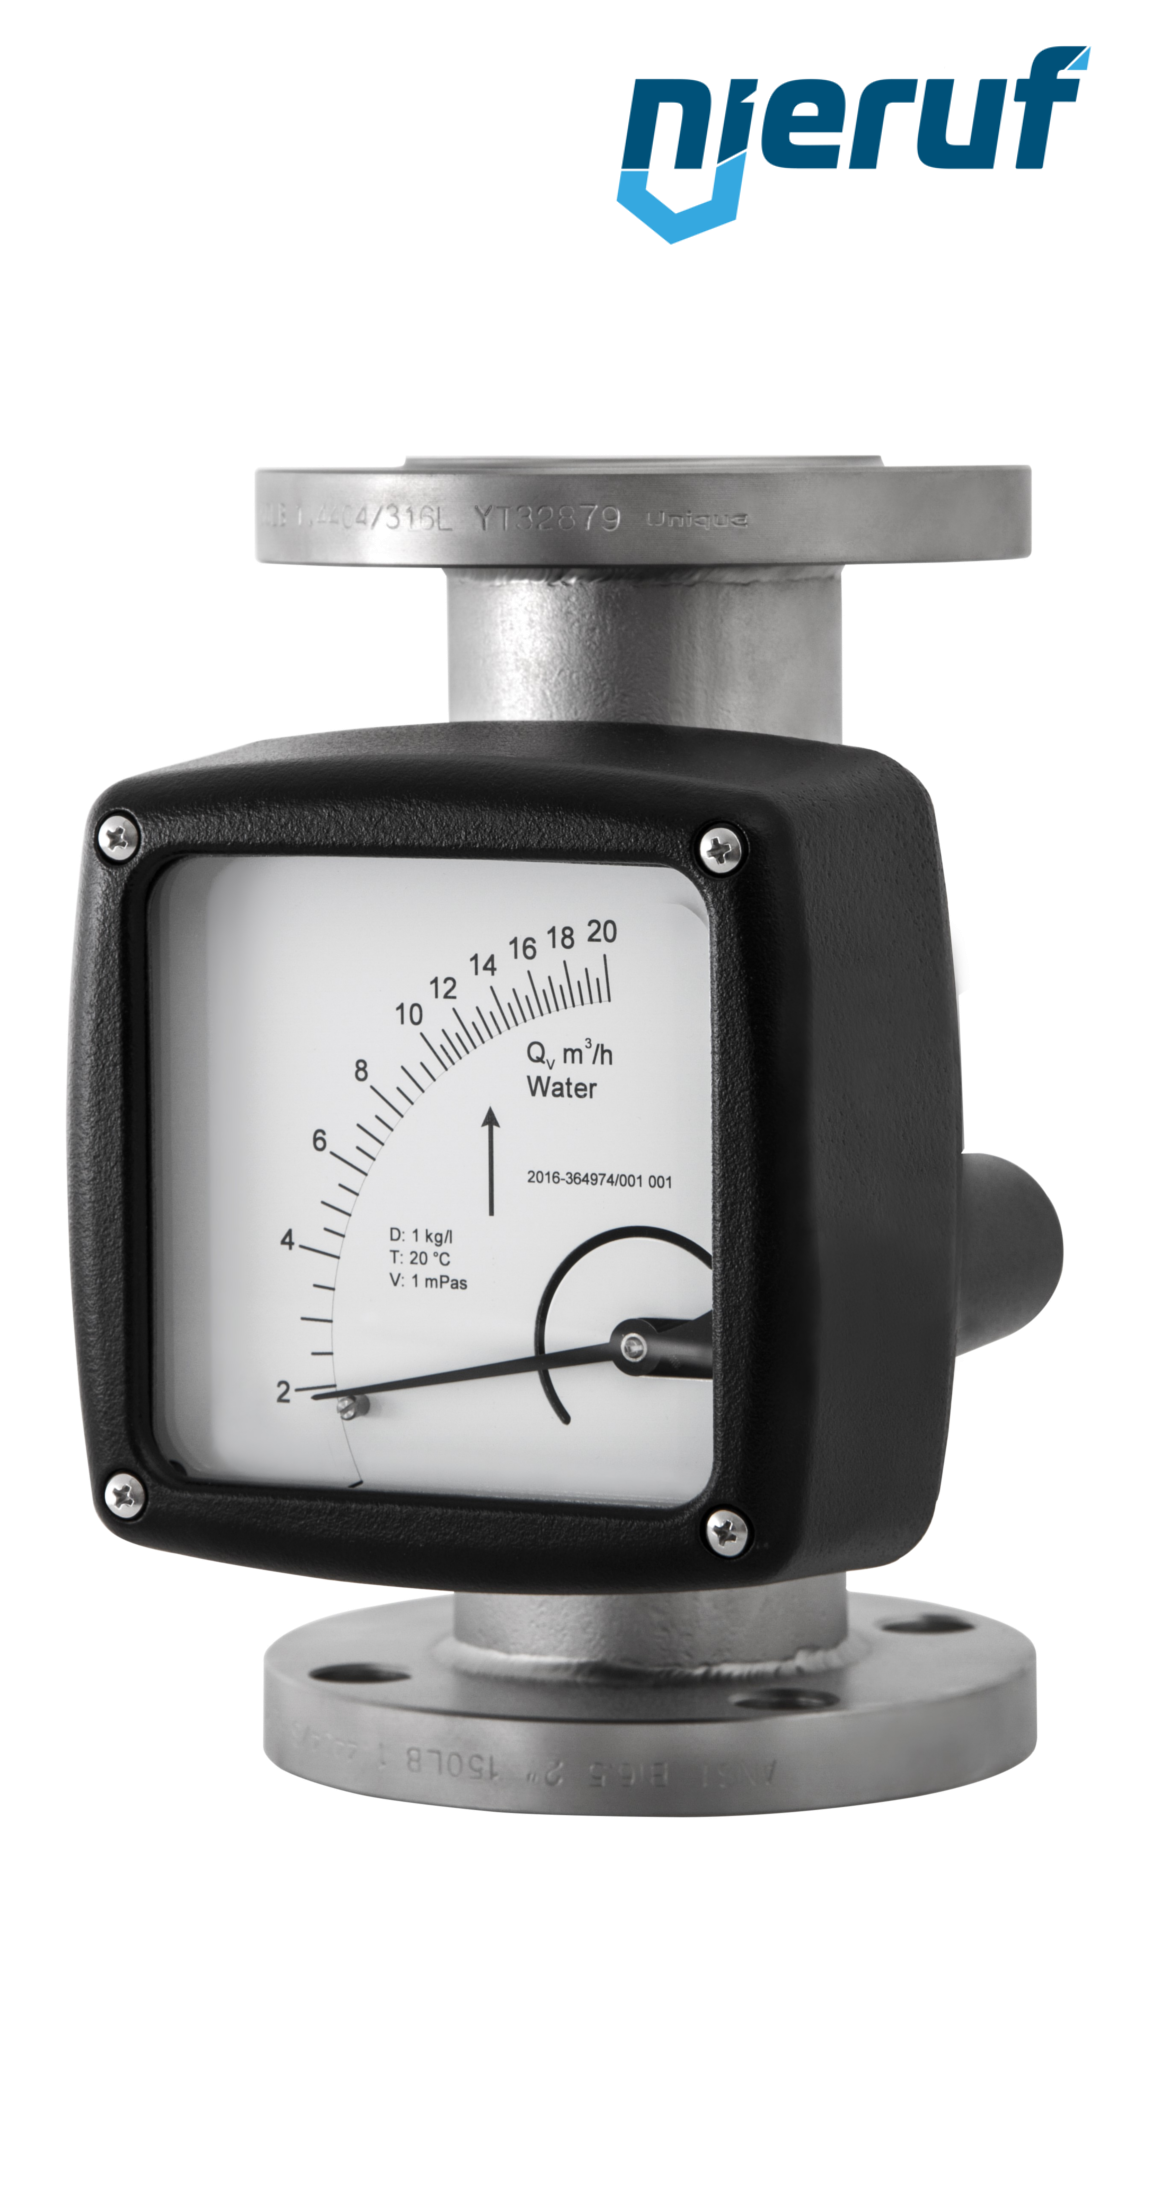 misuratore di flusso / rotametro completamente in metallo DN125-attacco 5000,0 - 50000,0 l/h tubo DN100 acqua